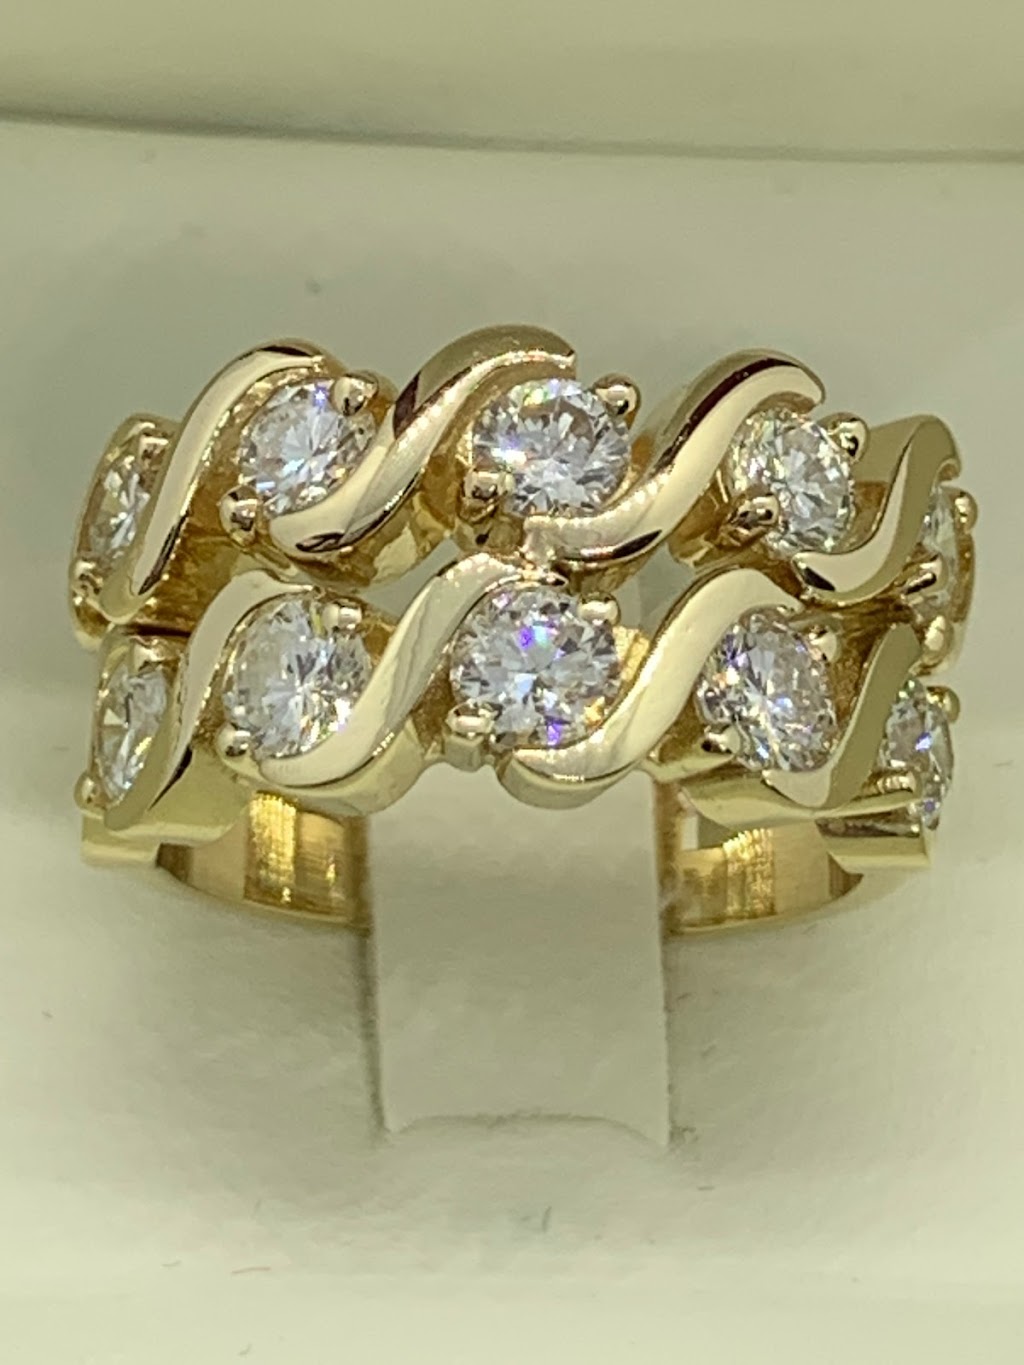 JD3 Jewelry & Gemstones | 109 Shadeland Ave, Lansdowne, PA 19050 | Phone: (215) 279-0606